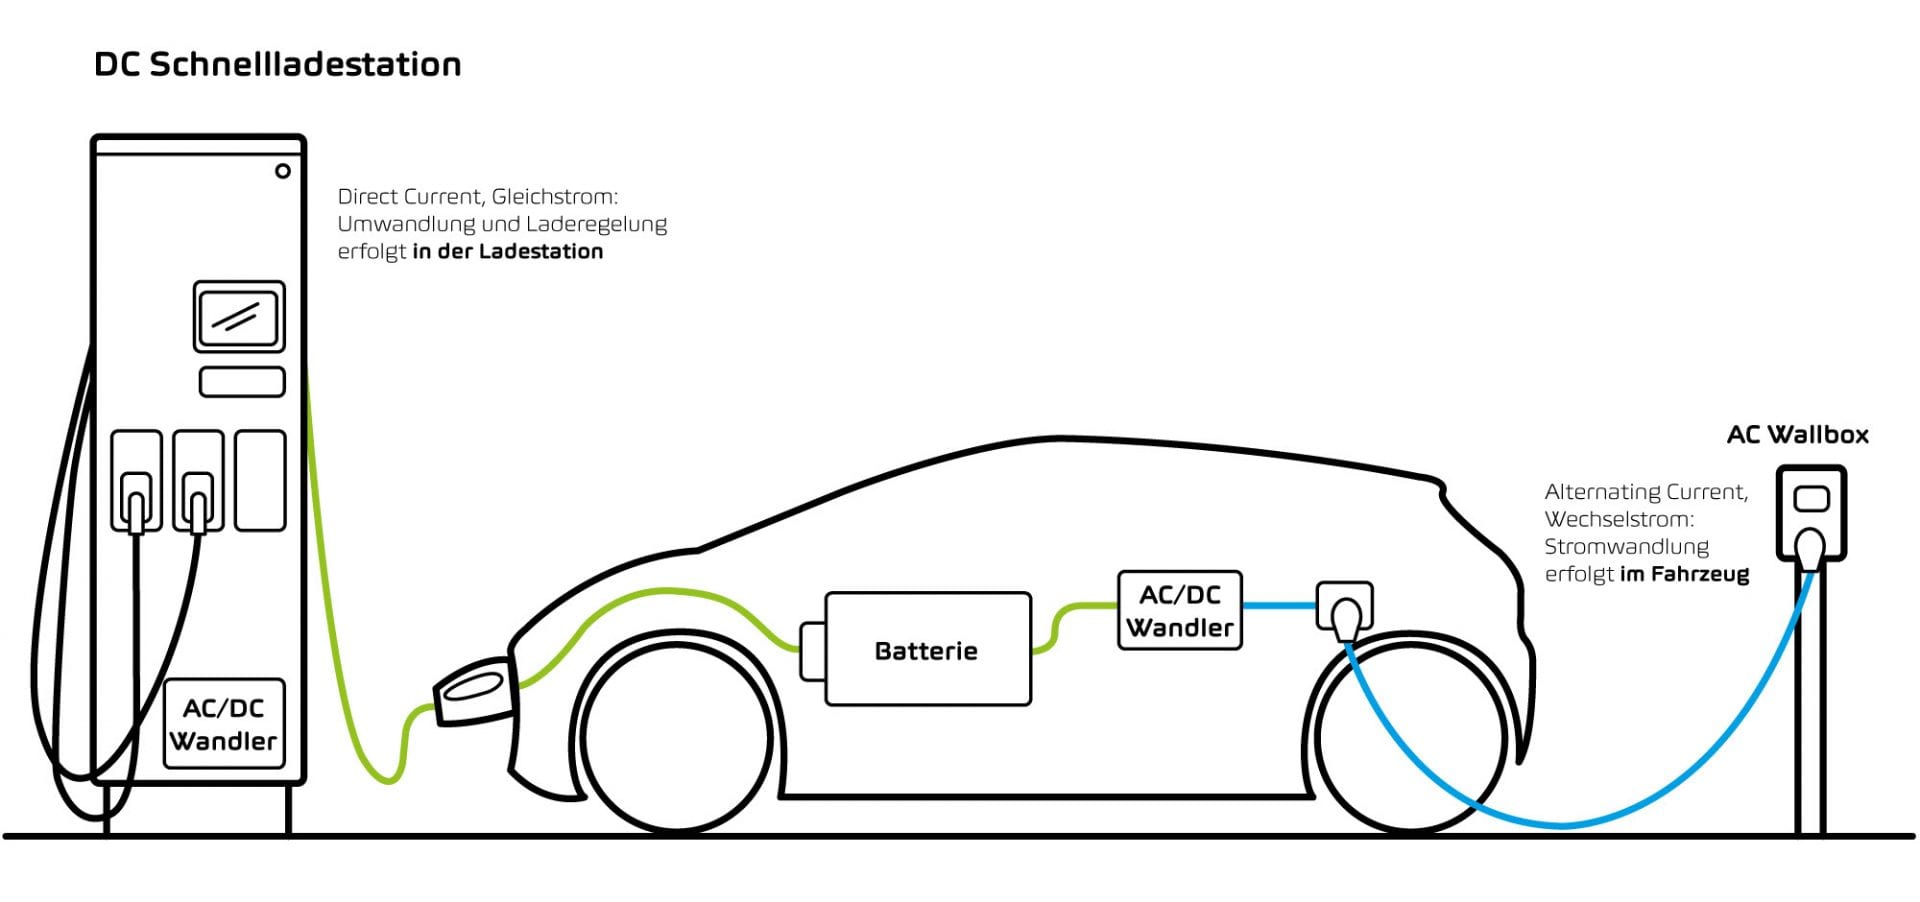 Illustration von einem Auto, das entweder an einer DC-Schnellladestation mit Gleichstrom oder an einer AC Wallbox mit Wechselstrom geladen wird.